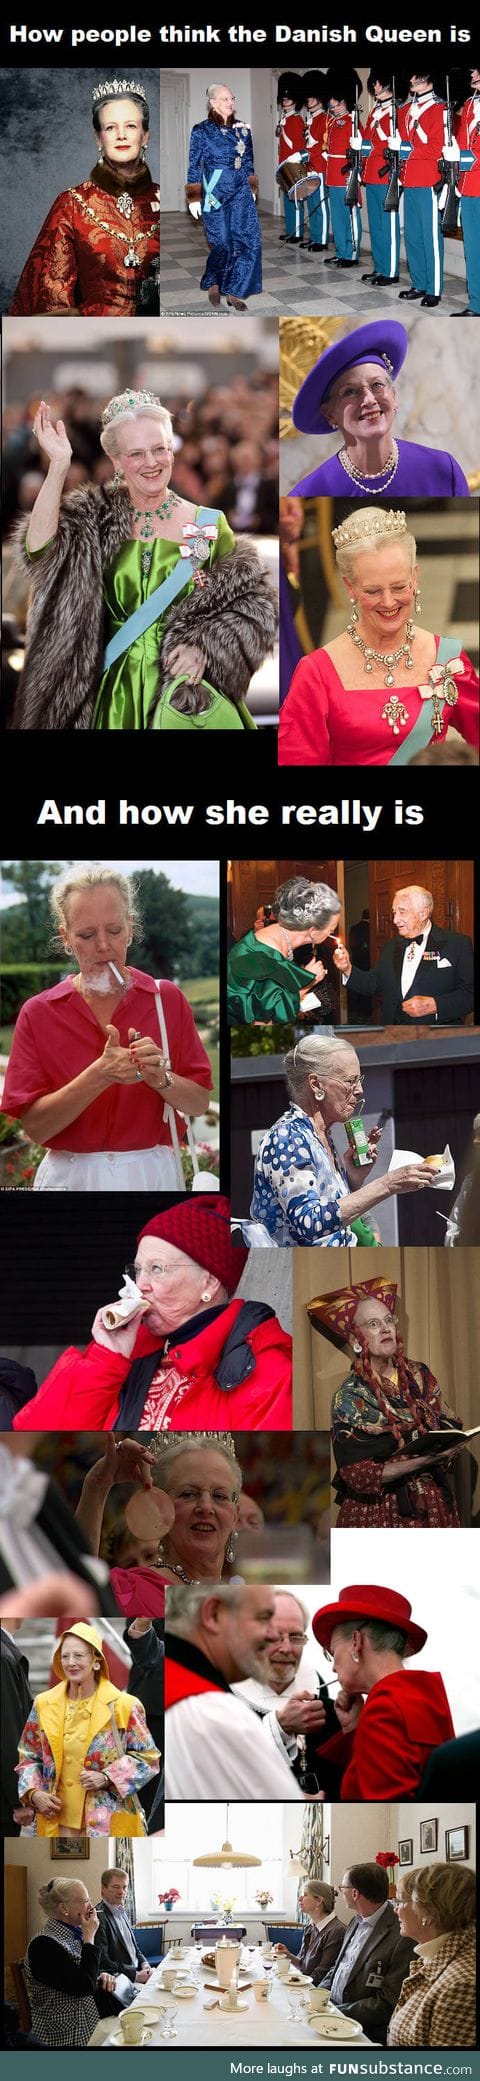 The Queen of Denmark